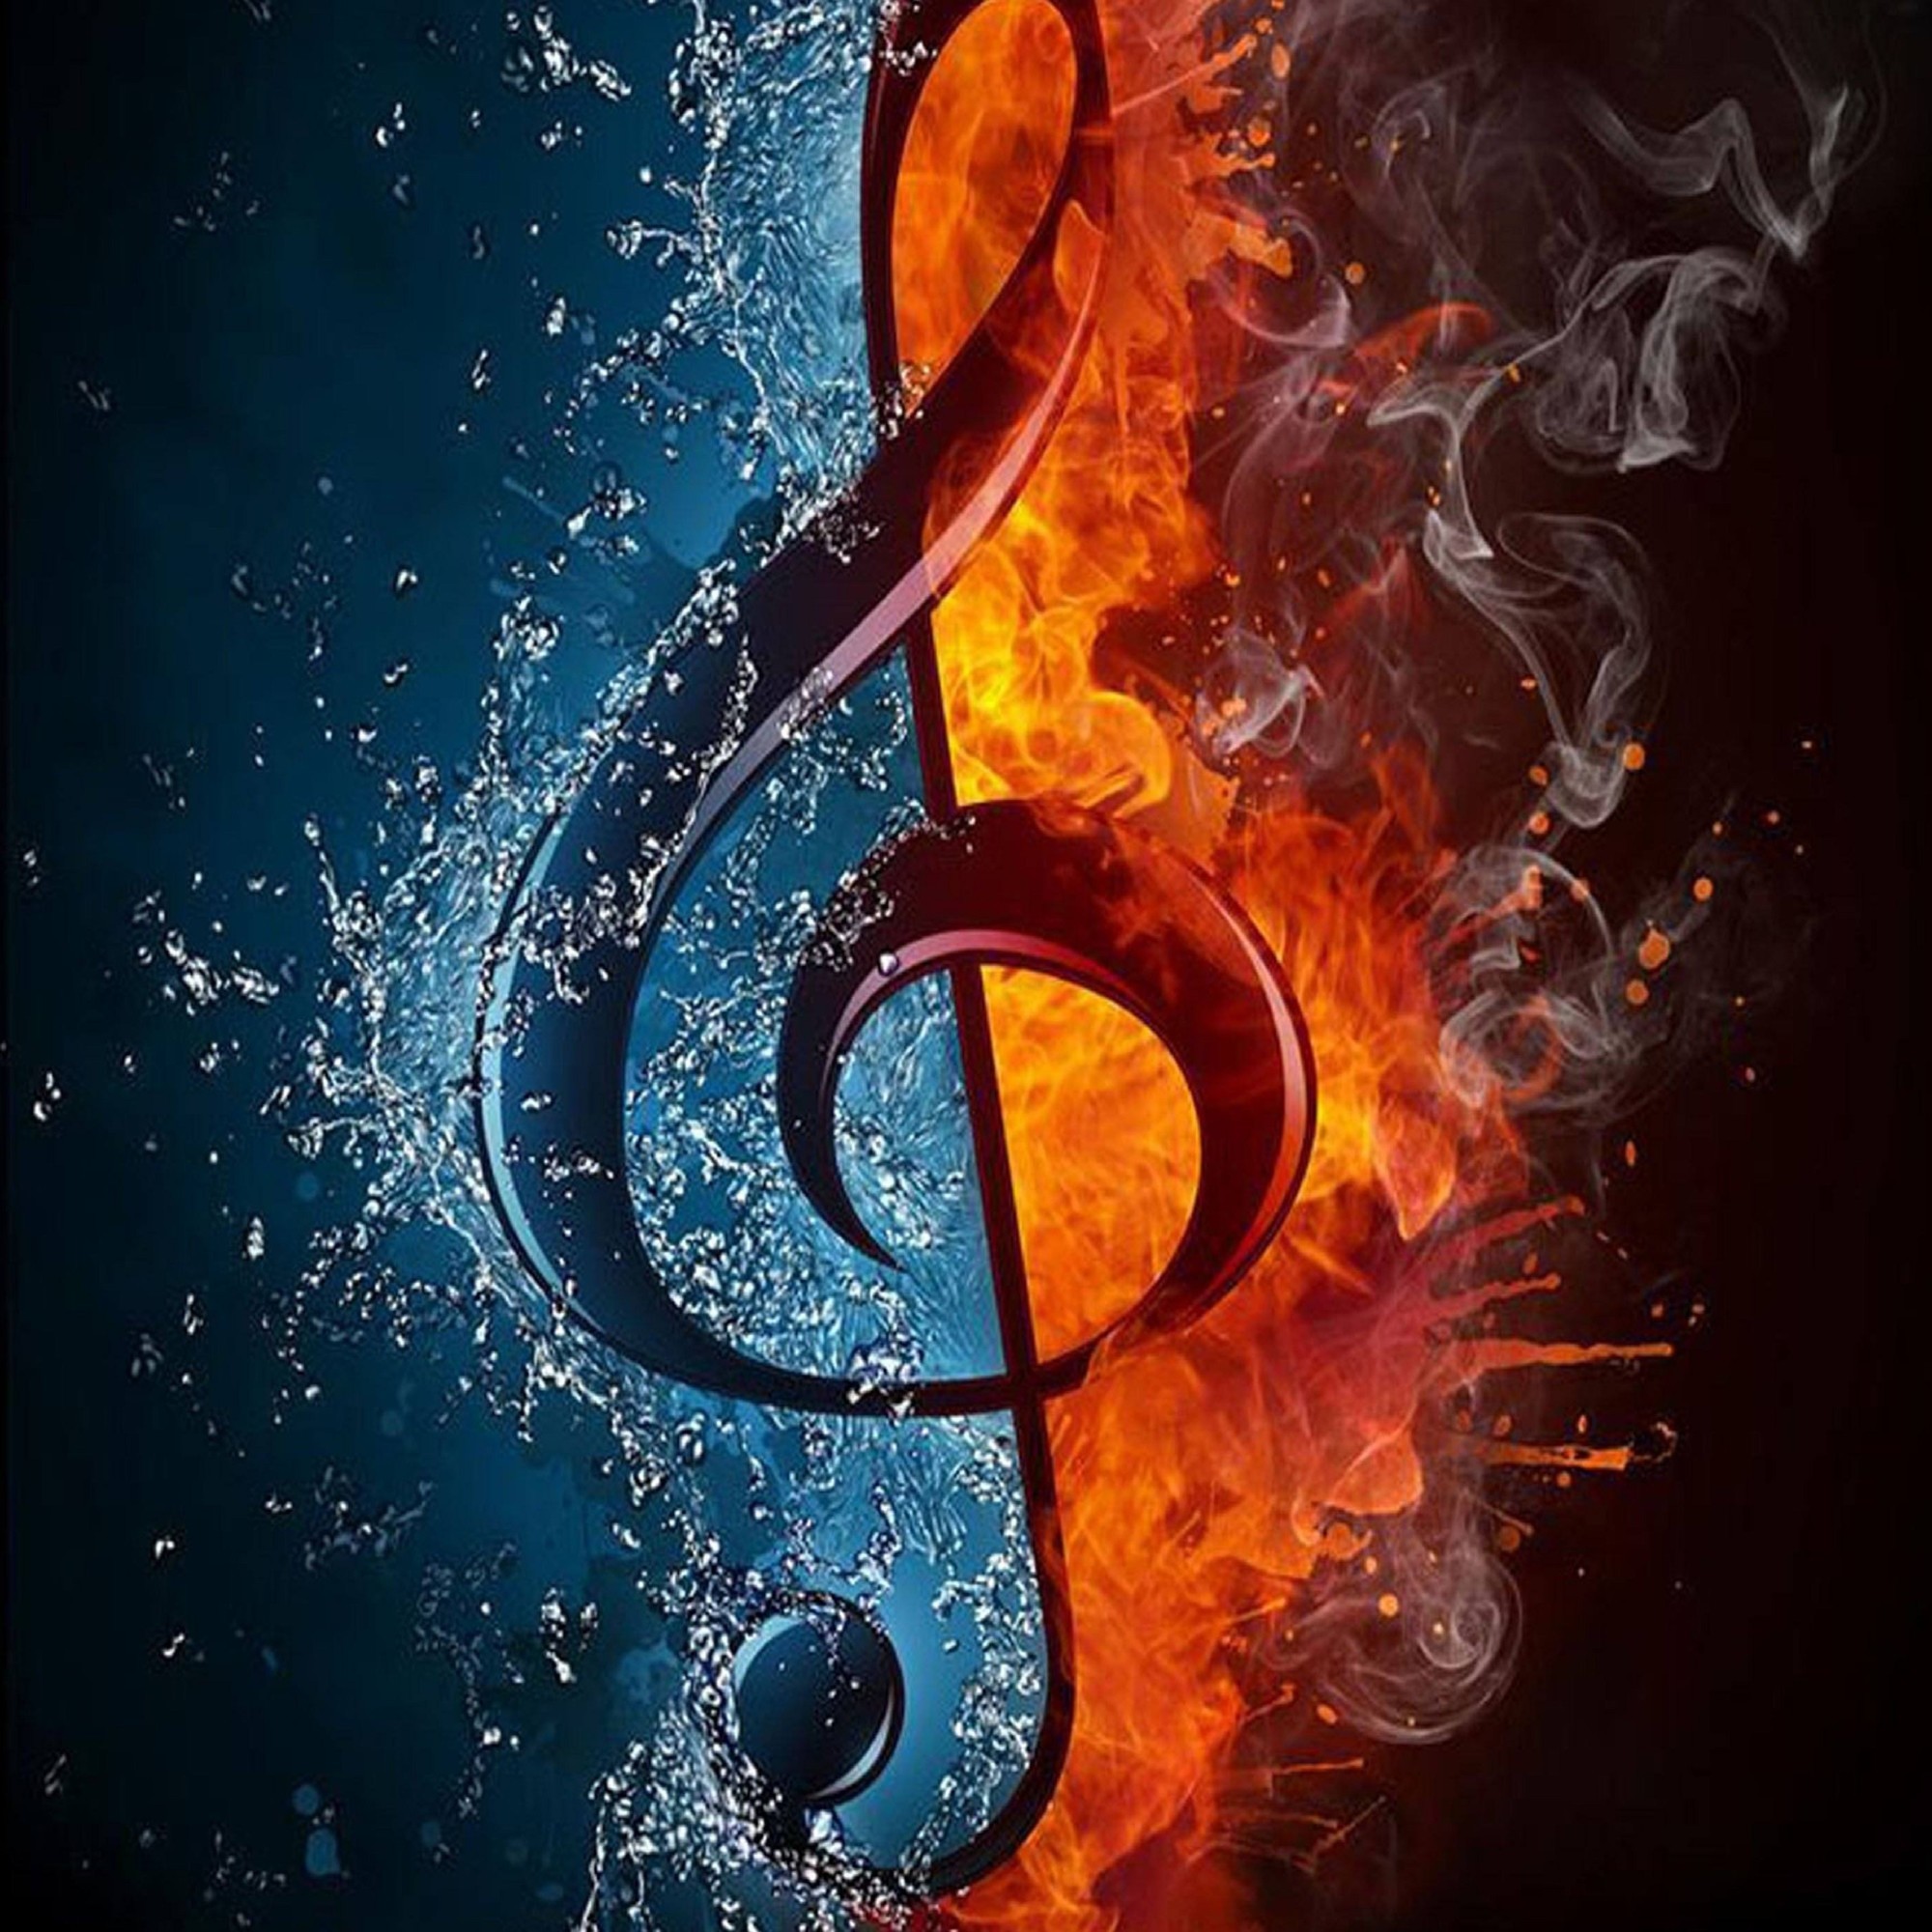 Скрипичного искусства. Красивый скрипичный ключ. Музыкальные картинки. Картинки на музыкальную тему. Ноты в огне.